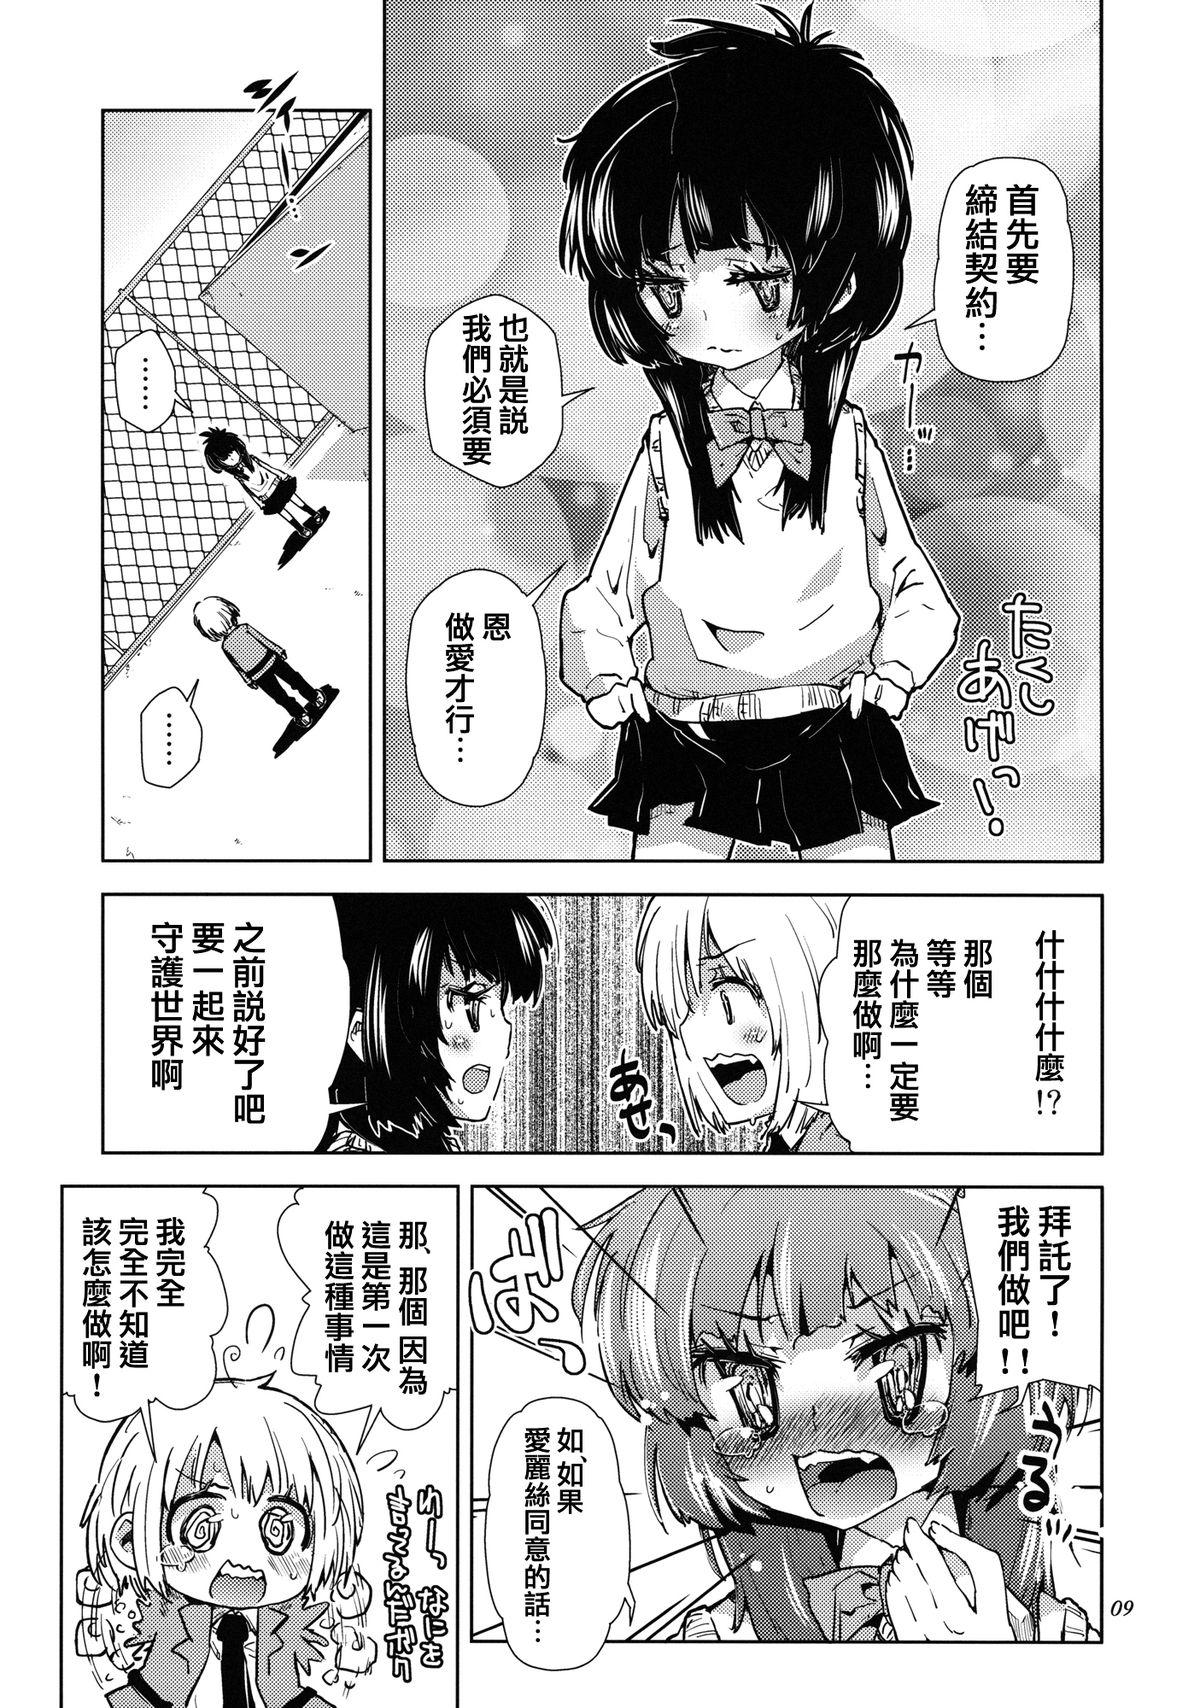 Cuckolding Sekai ga Dou Toka itsu Chau Otoko no Musume wa Denpa Kawaii. Boy Fuck Girl - Page 8